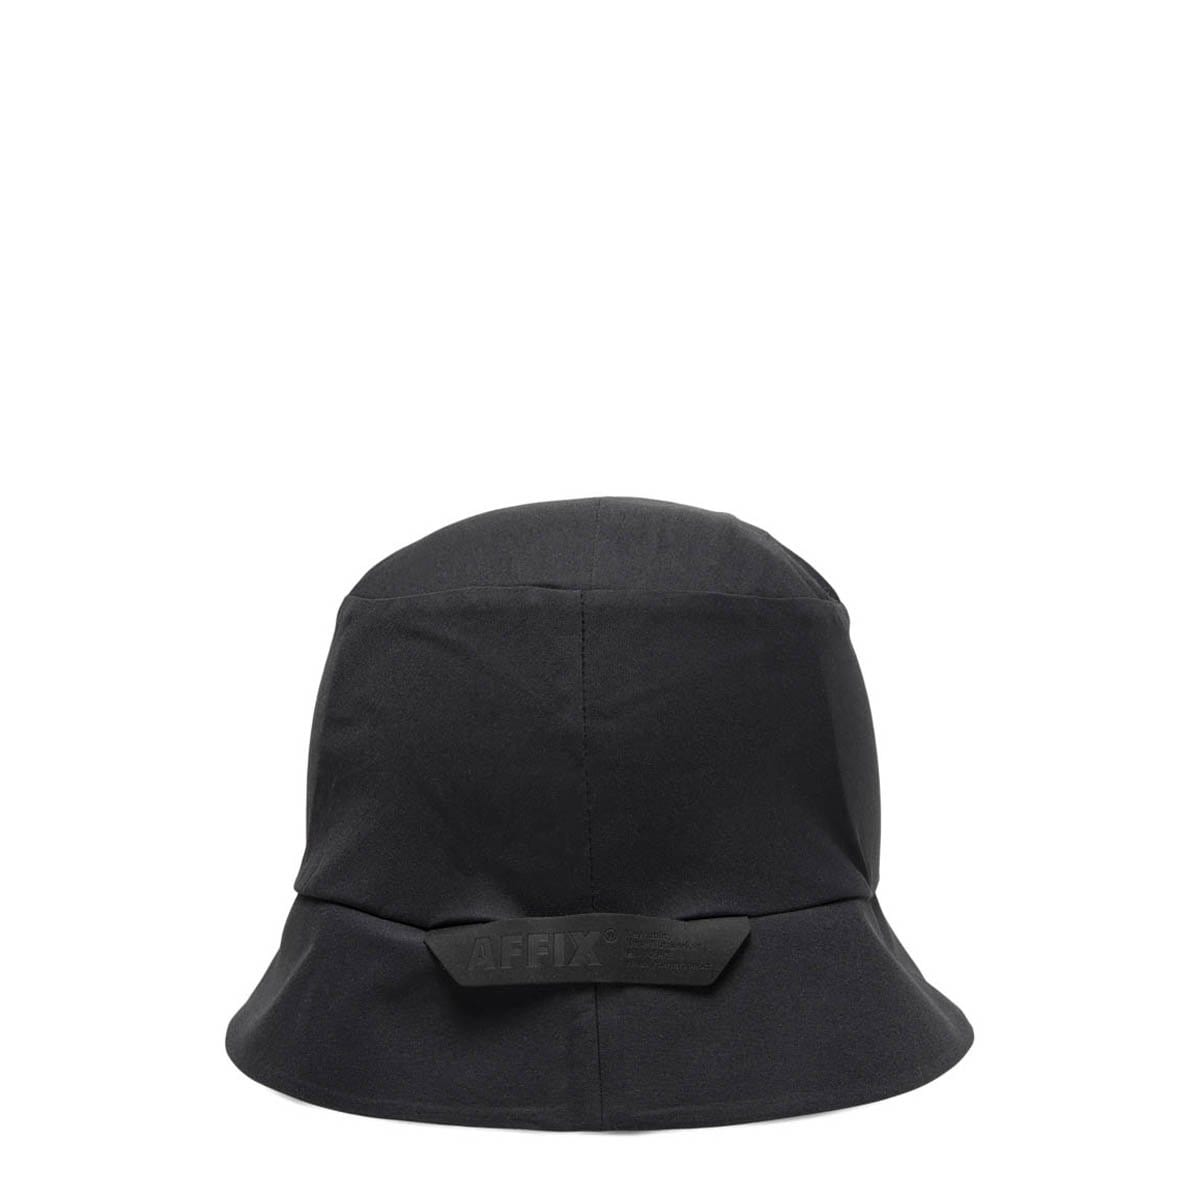 Affix Headwear STOW BUCKET HAT